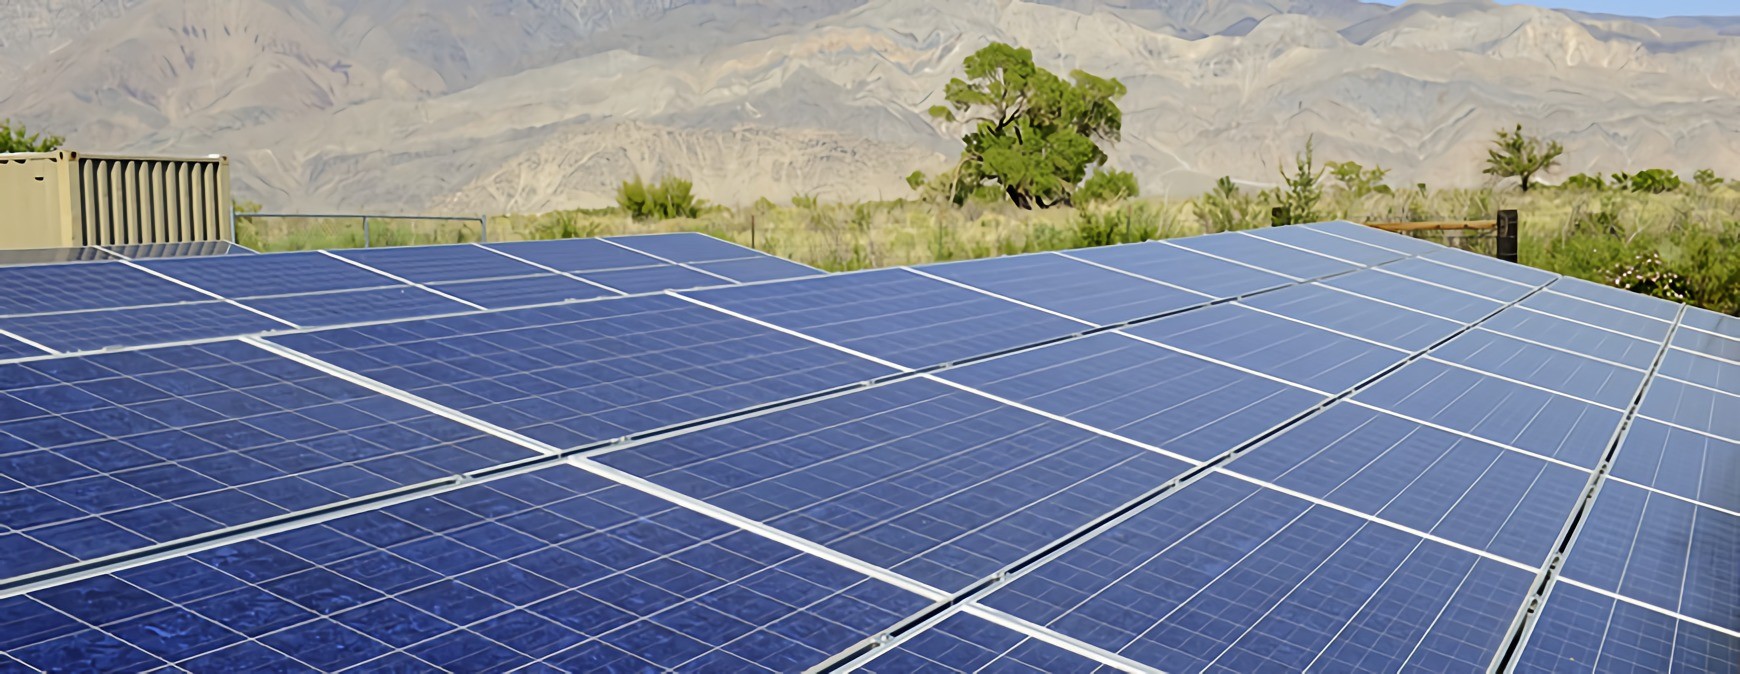 california solar training